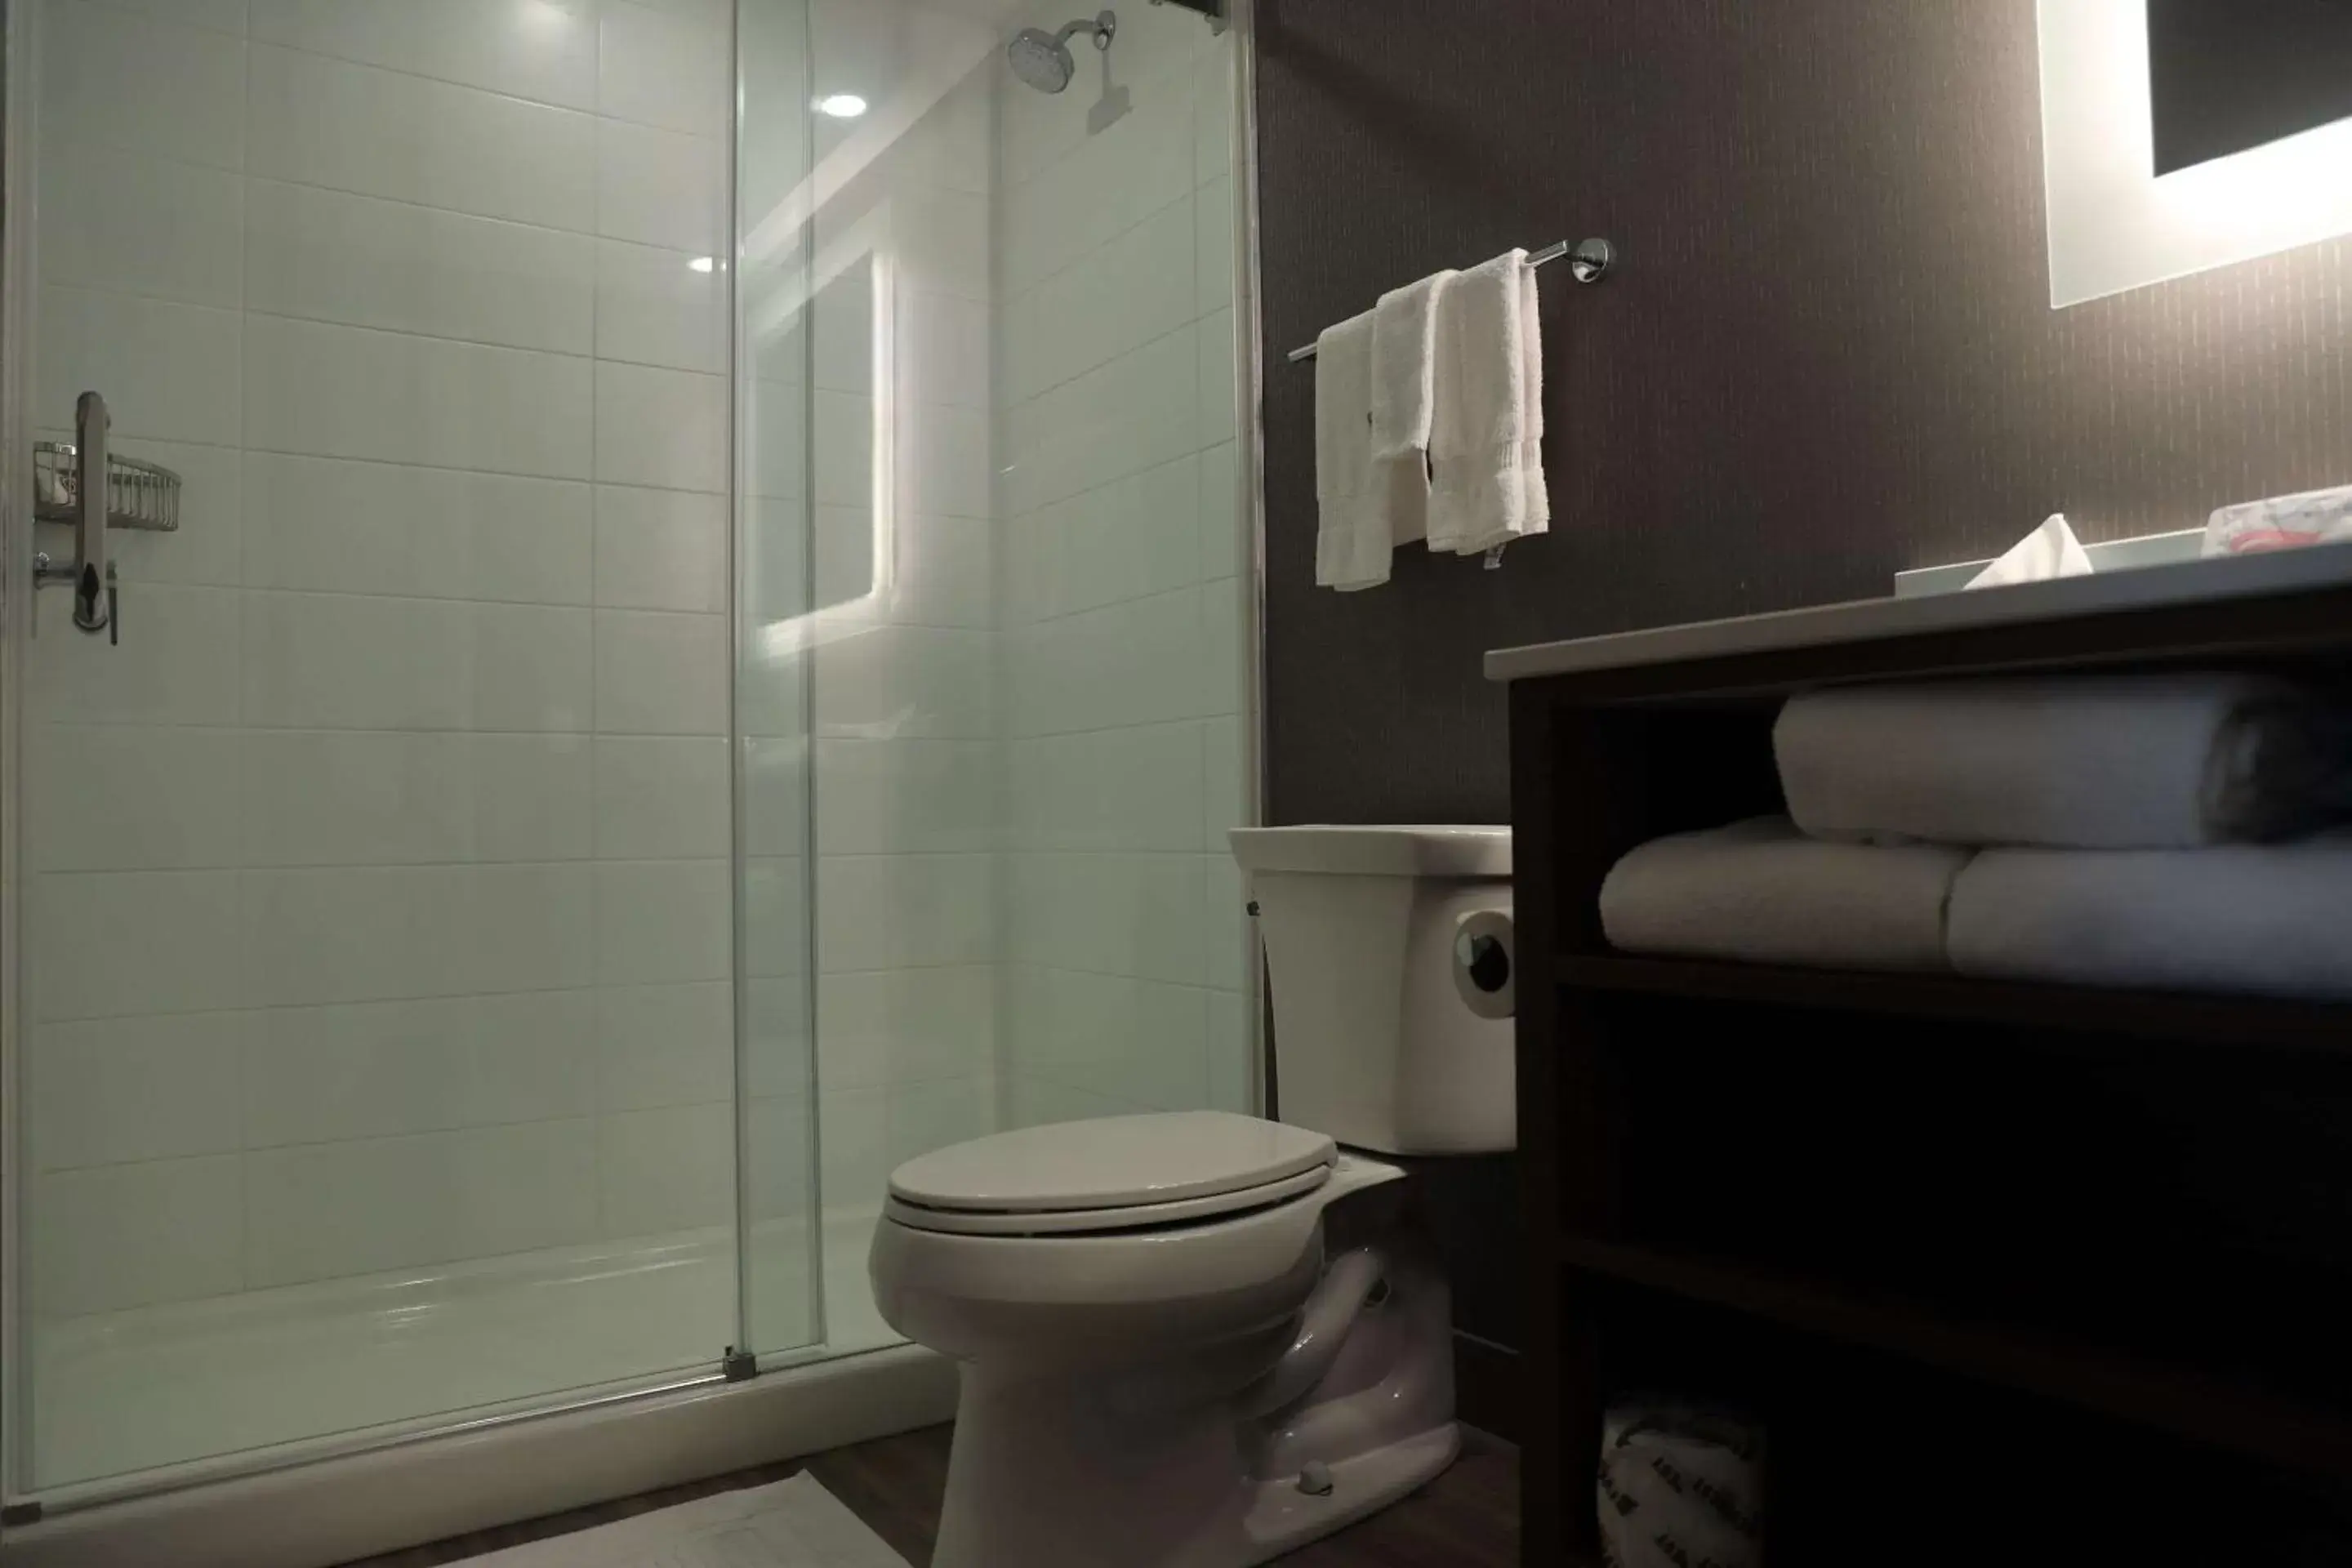 Bedroom, Bathroom in Comfort Inn and Suites Ingersoll